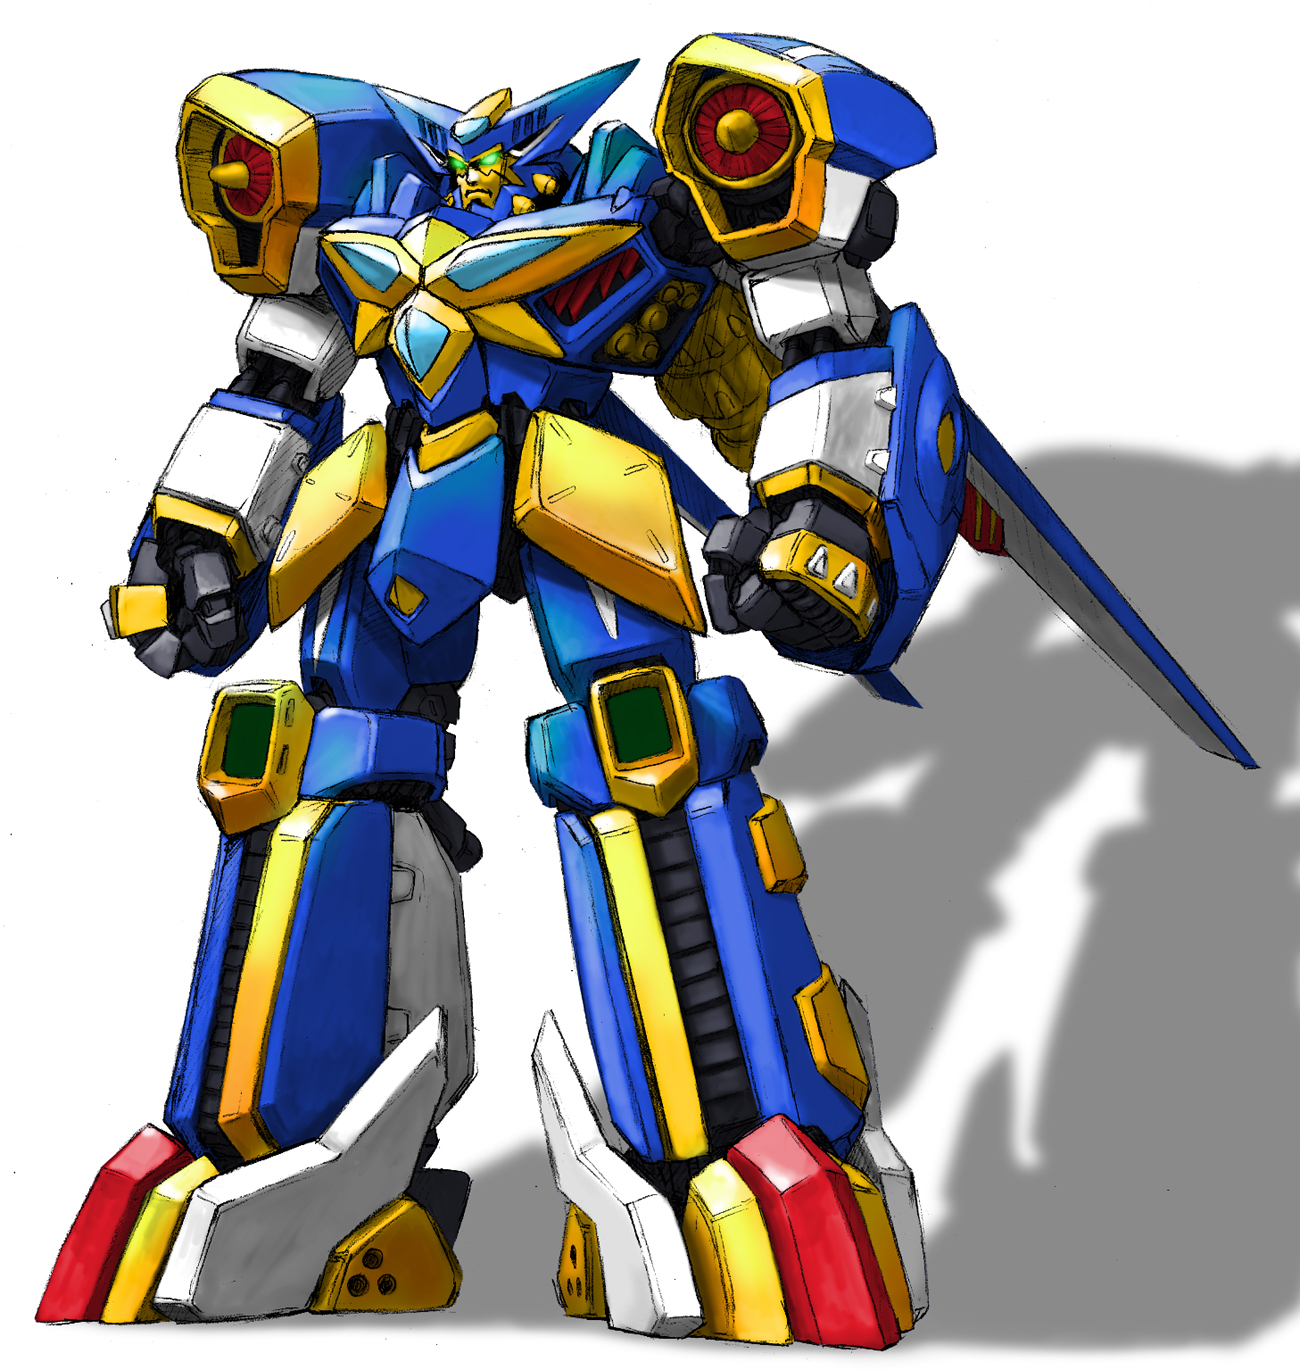 Anime Mechs Grungust Super Robot Wars Artwork Digital Art Fan Art 1300x1370